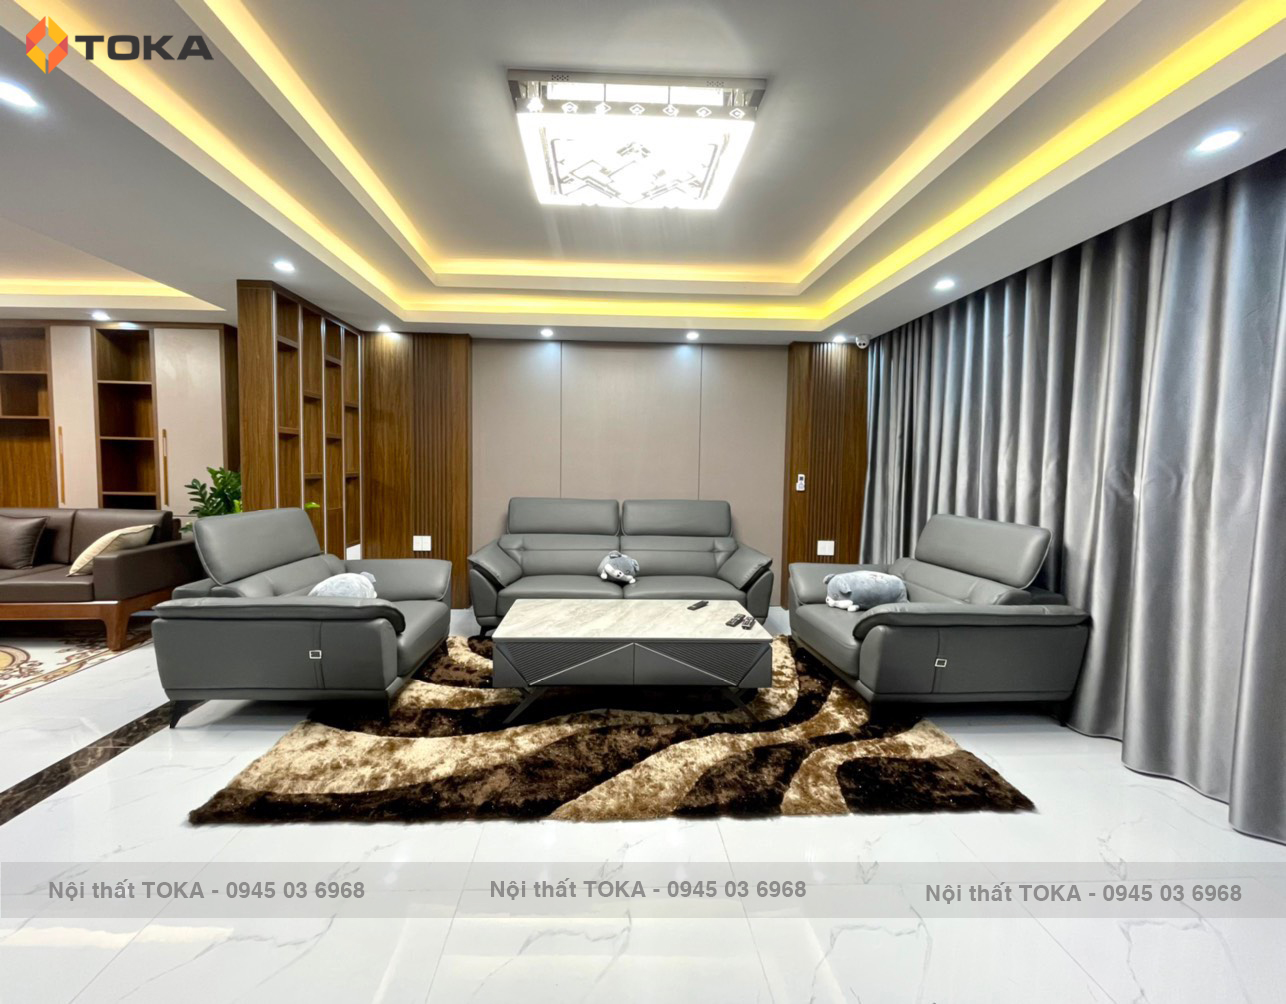 Với gợi ý cách kết hợp sofa cho phòng khách rộng của TOKA, bạn có thể biến căn phòng trở nên độc đáo hơn bao giờ hết. Từ cách bố trí dàn sofa, phối màu sắc cho đến việc chọn đồ trang trí, TOKA đã cung cấp cho bạn những lời khuyên hữu ích để tạo ra một phòng khách rộng đẹp và ấn tượng.